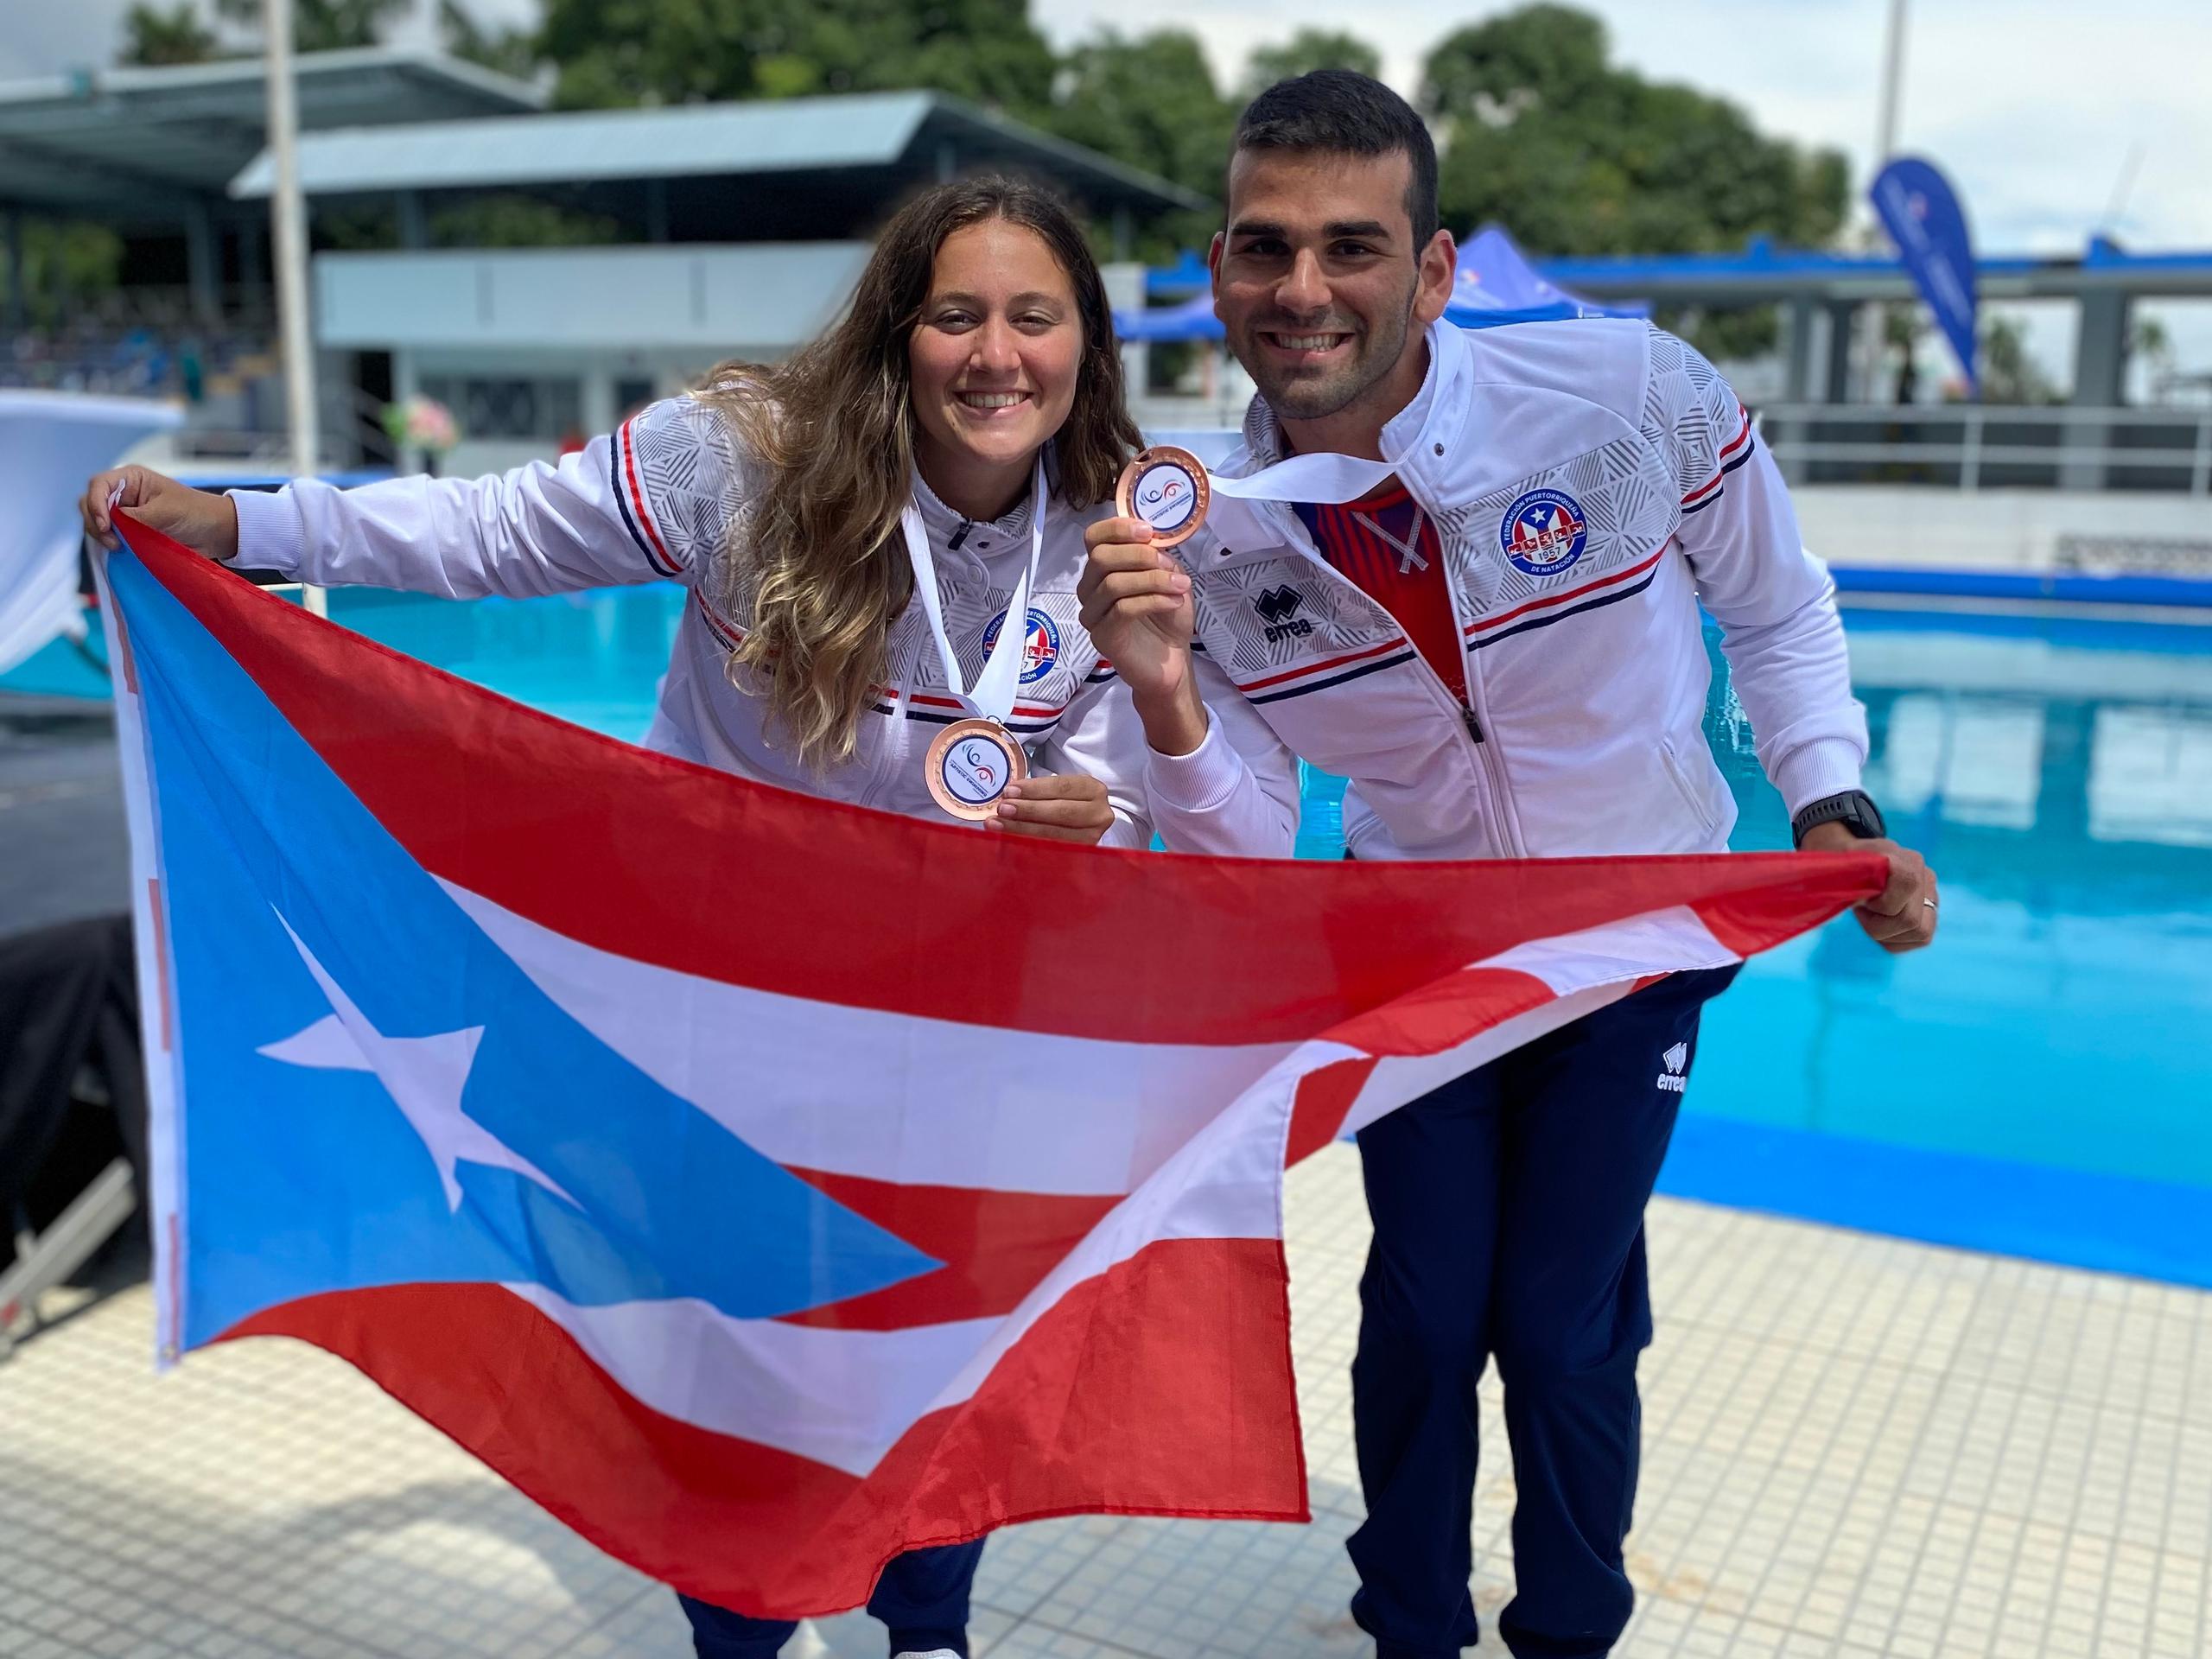 Javier Ruisánchez ya ha representado a Puerto Rico en la prueba mixta a nivel de competencias regionales y mundiales.